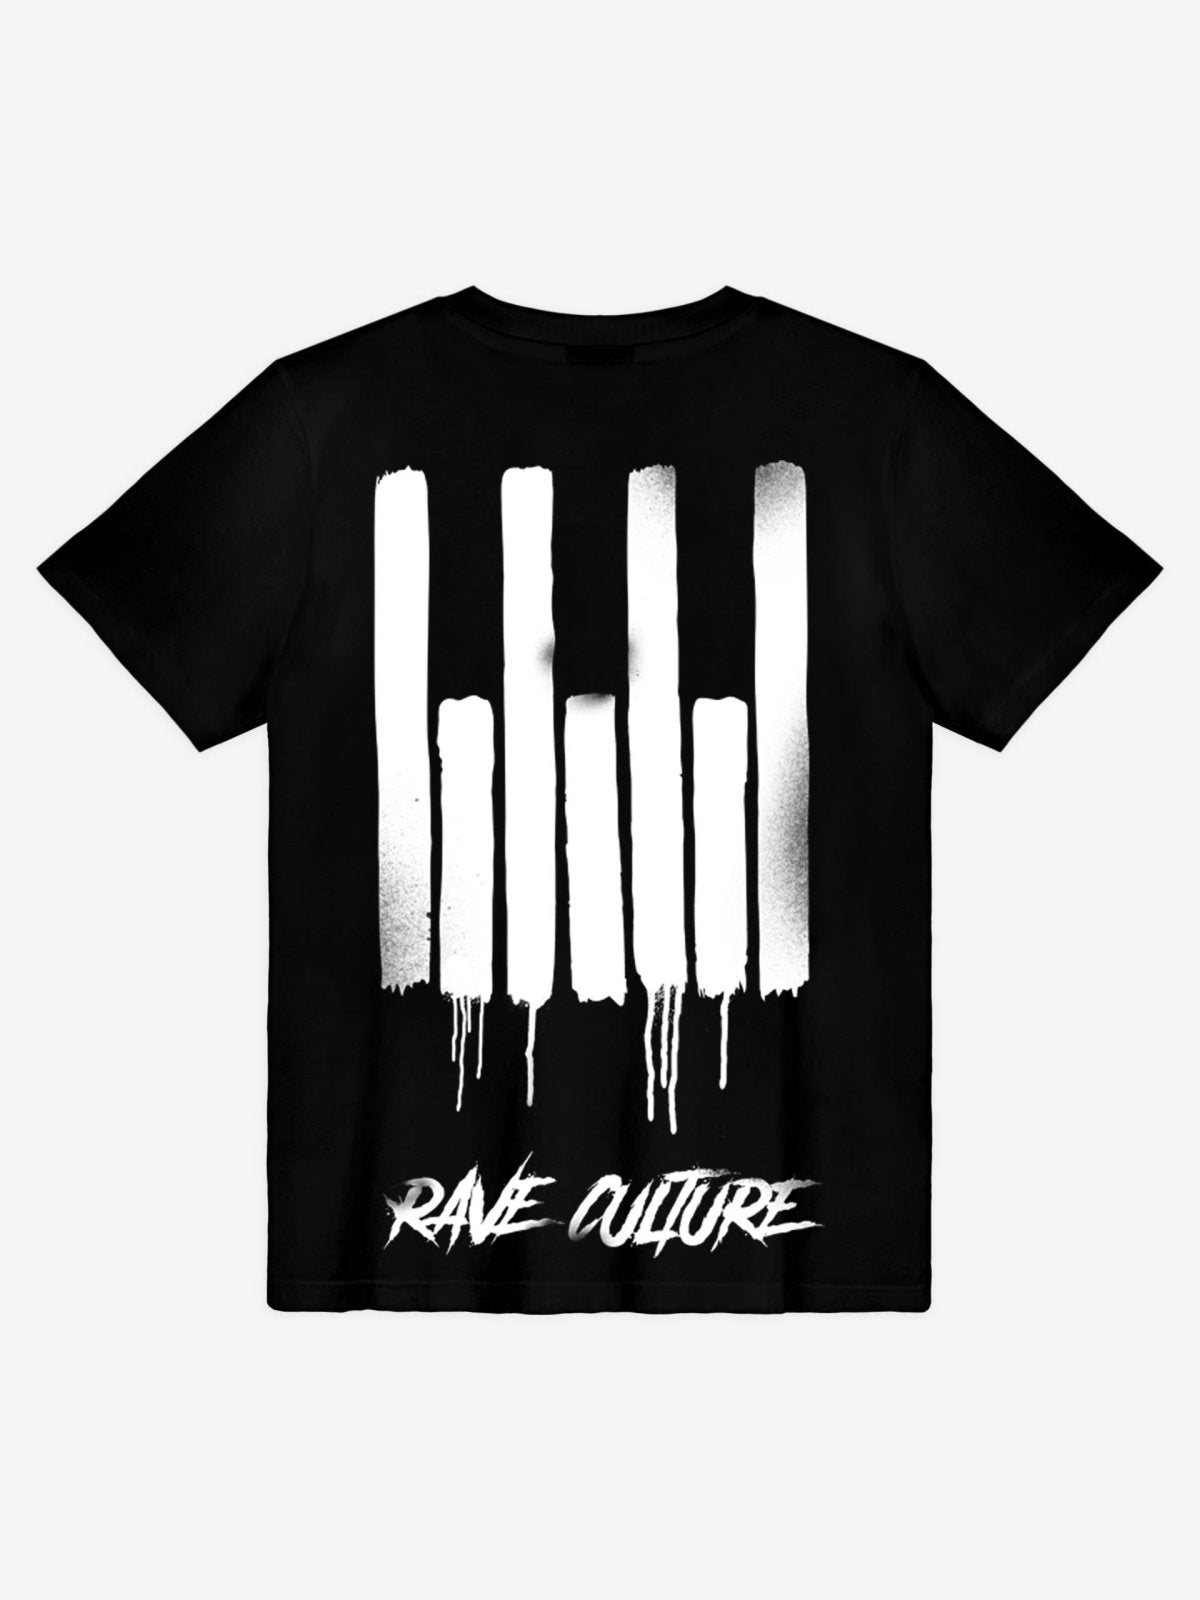 Rave Is Not A Crime Black T-Shirt - Rave Culture Shop